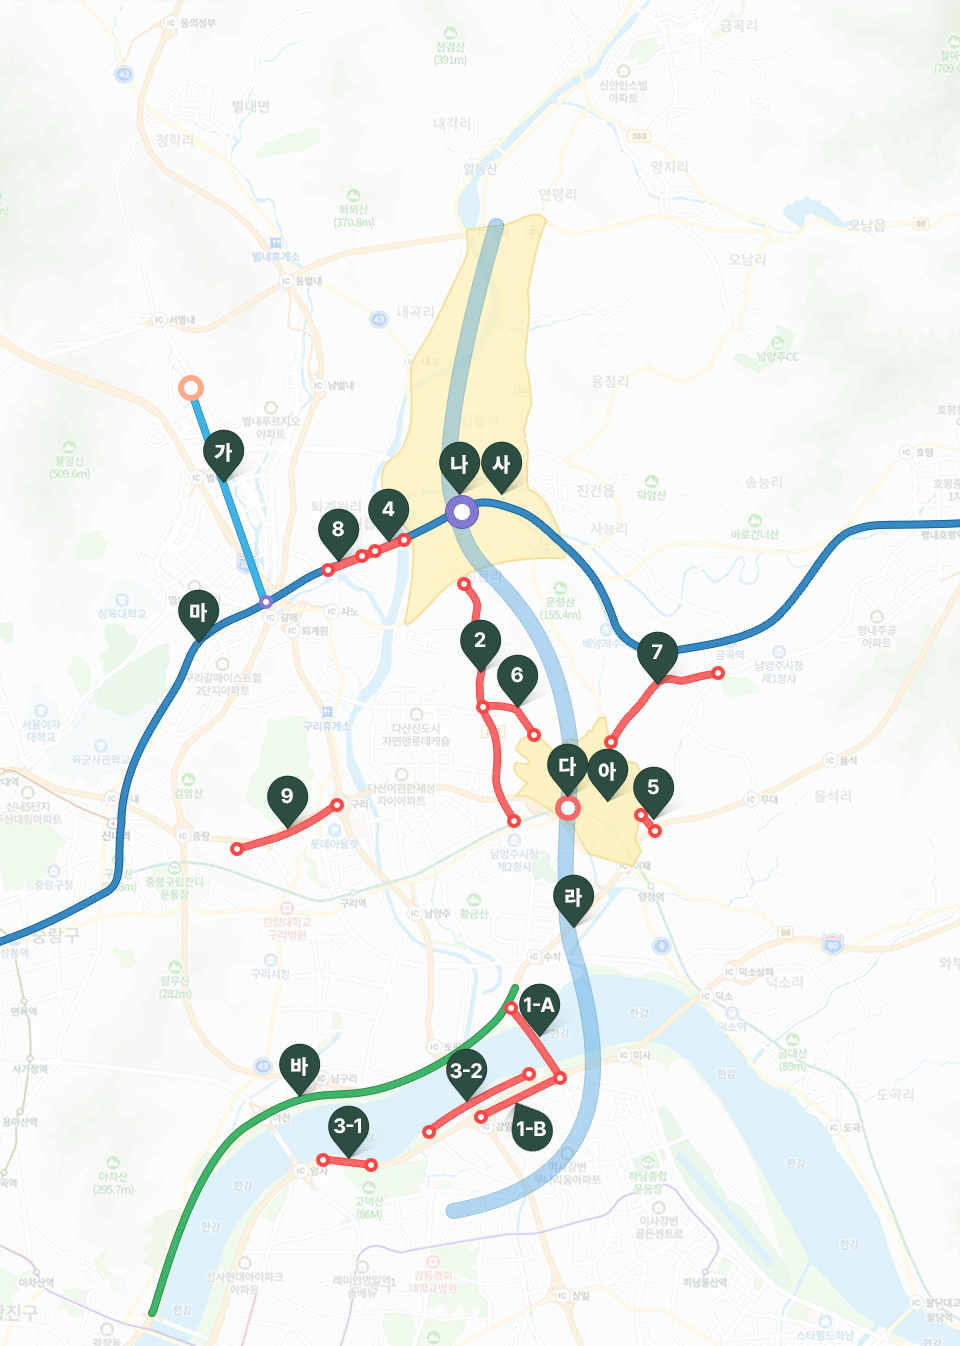 광역교통계획도, 주요 철도 노선 및 BRT 노선, 도로 개선 내용을 포함한 지도